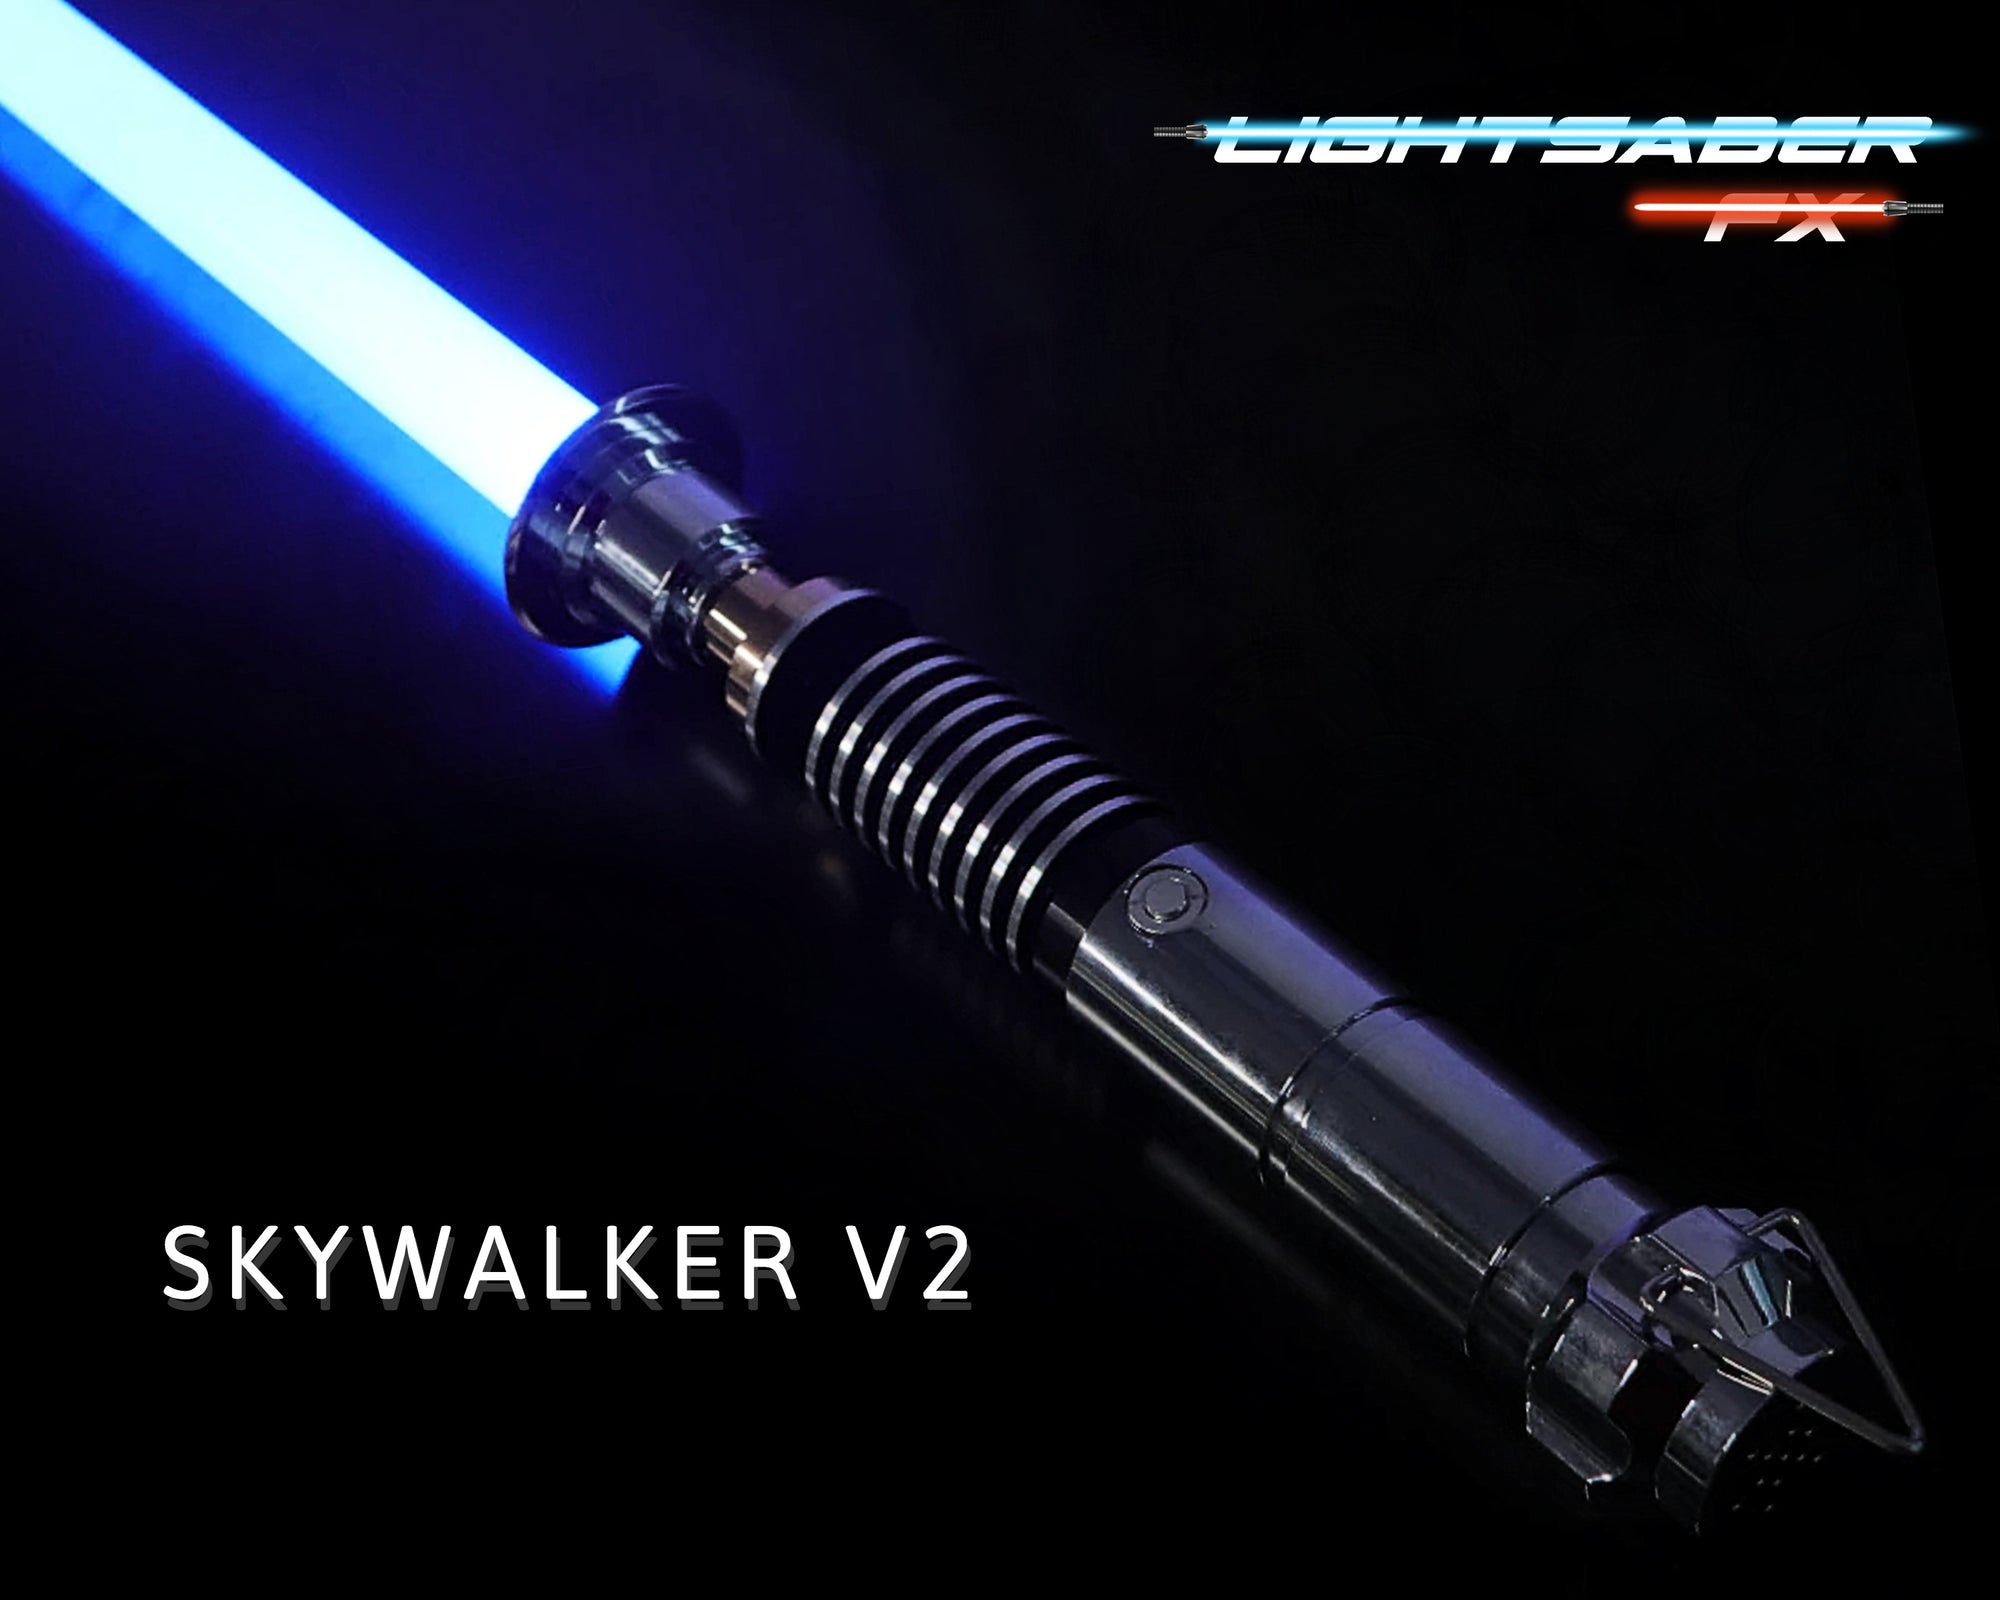 Luke Skywalker V2